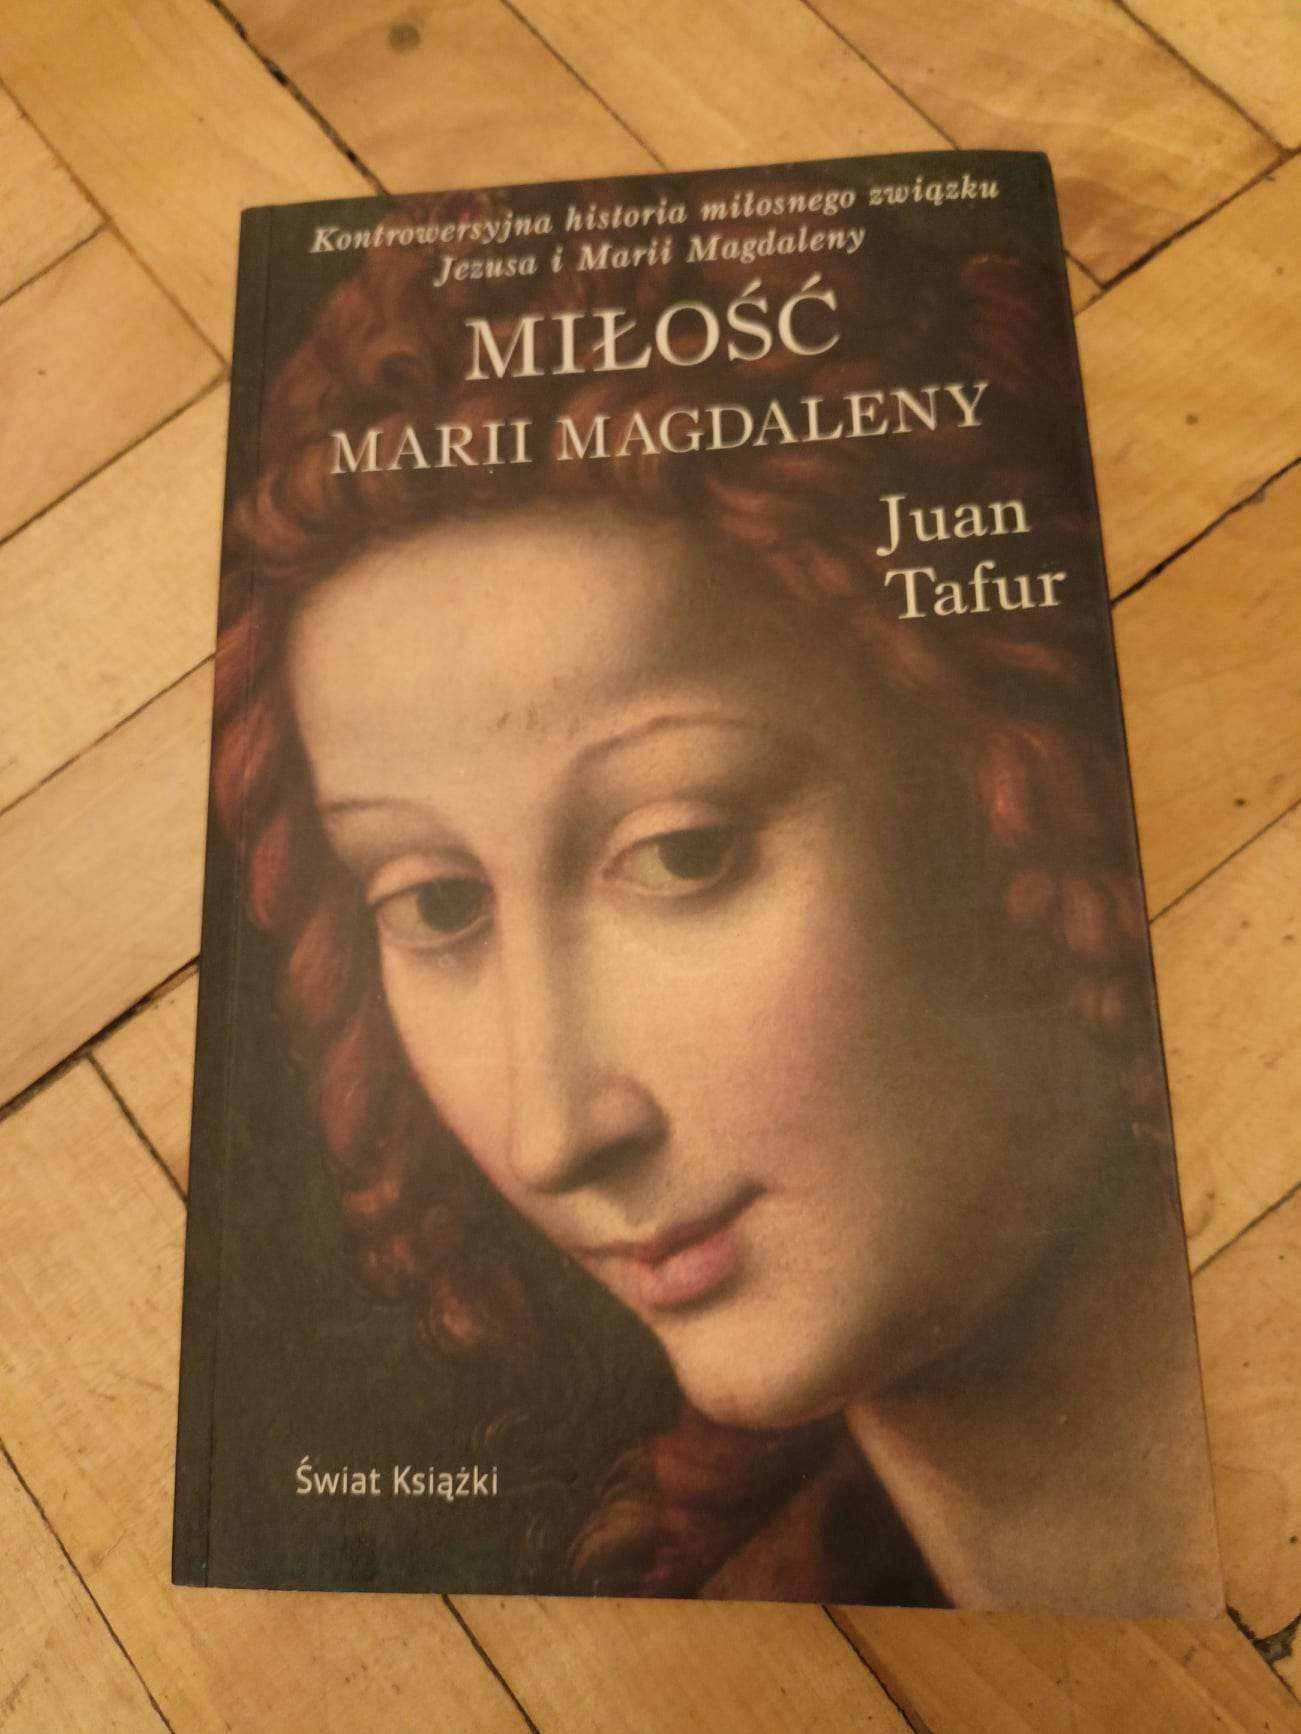 Książka "Miłość Marii Magdaleny